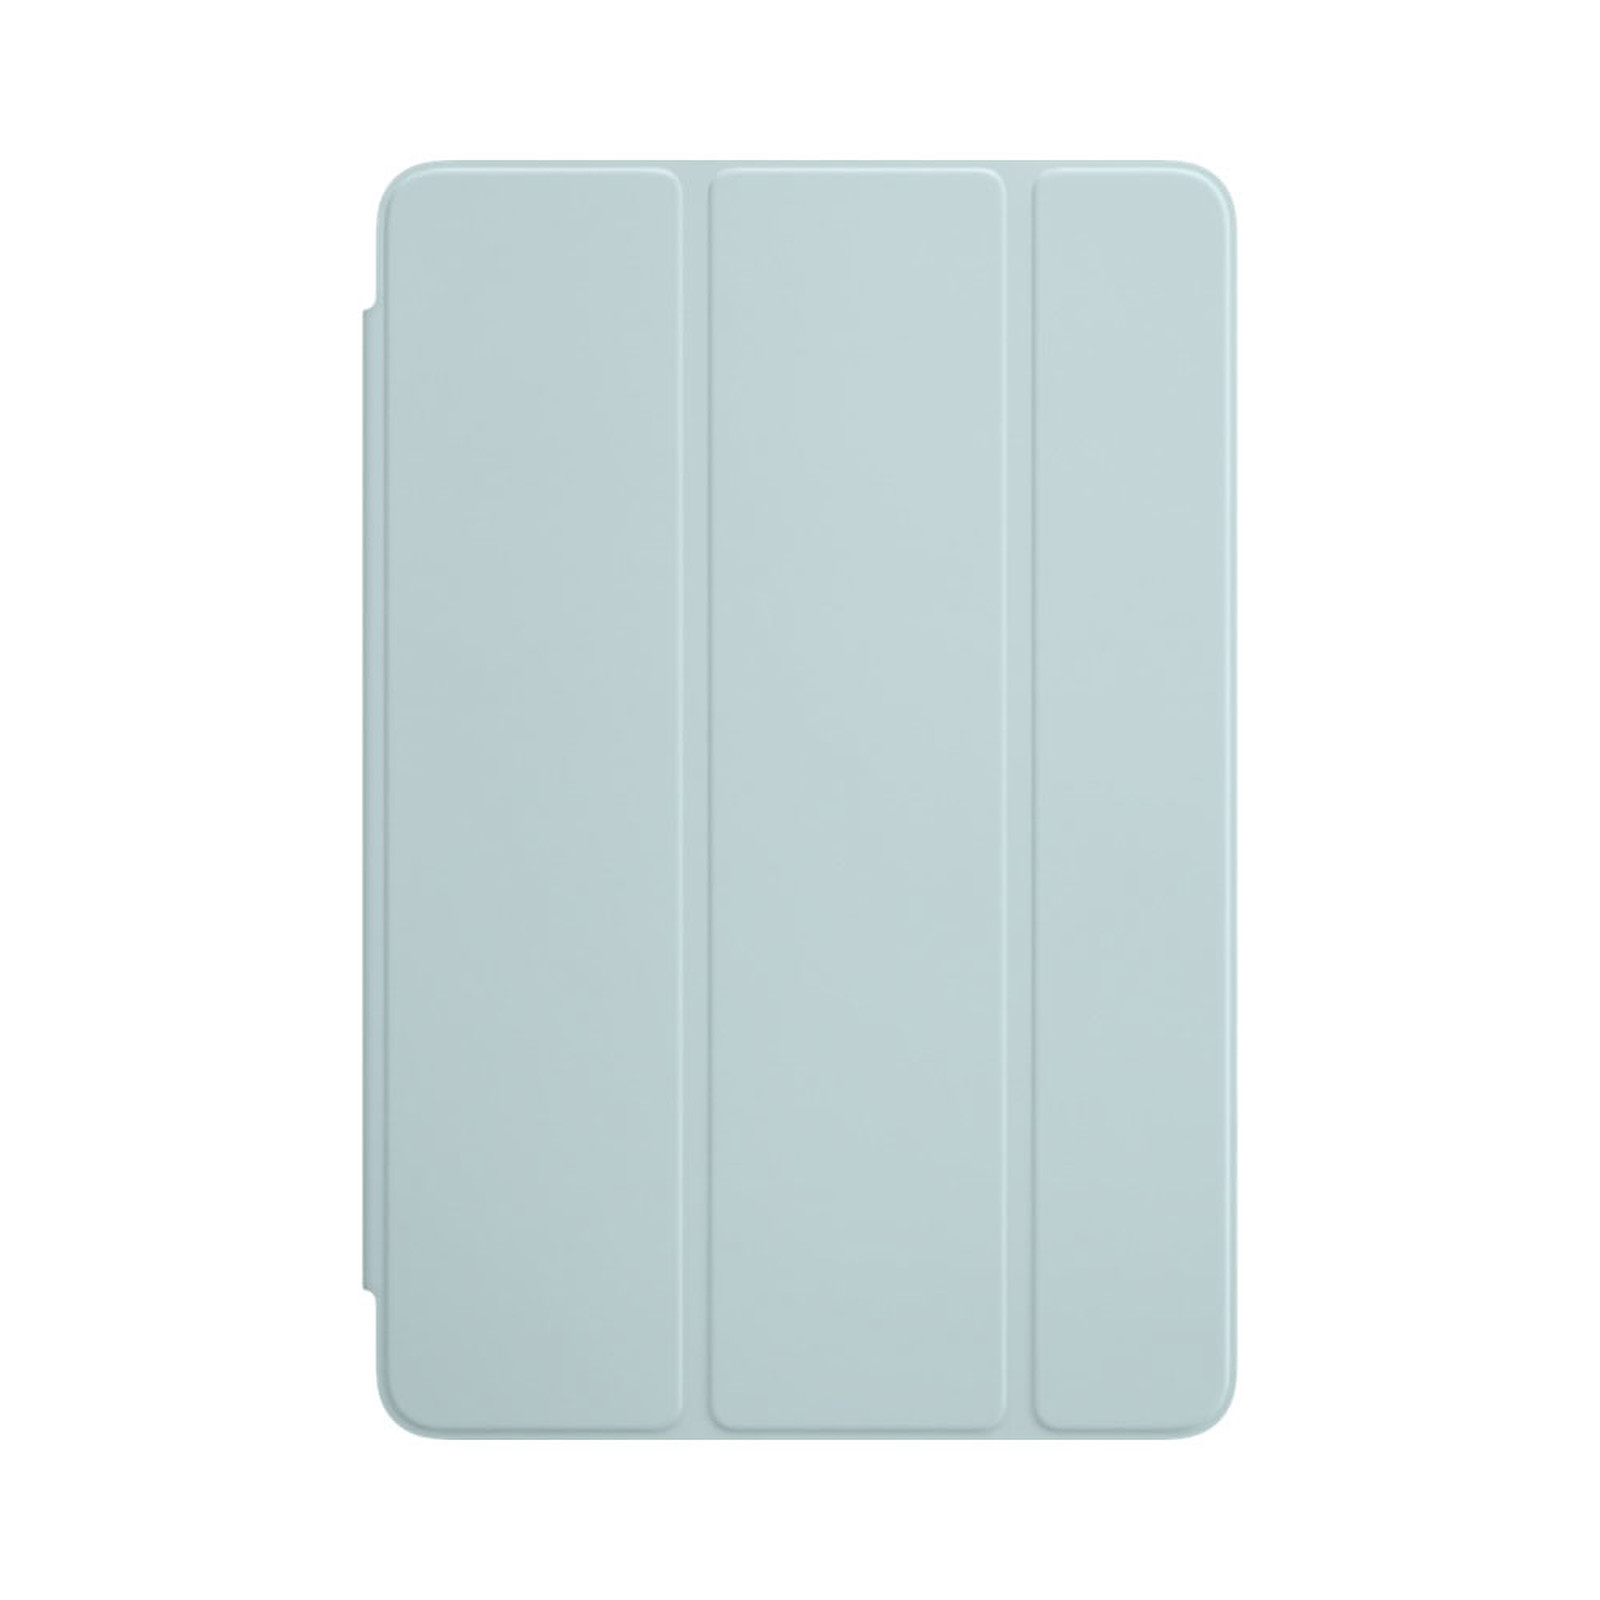 Apple iPad mini 4 Smart Cover Turquoise - Etui tablette Apple